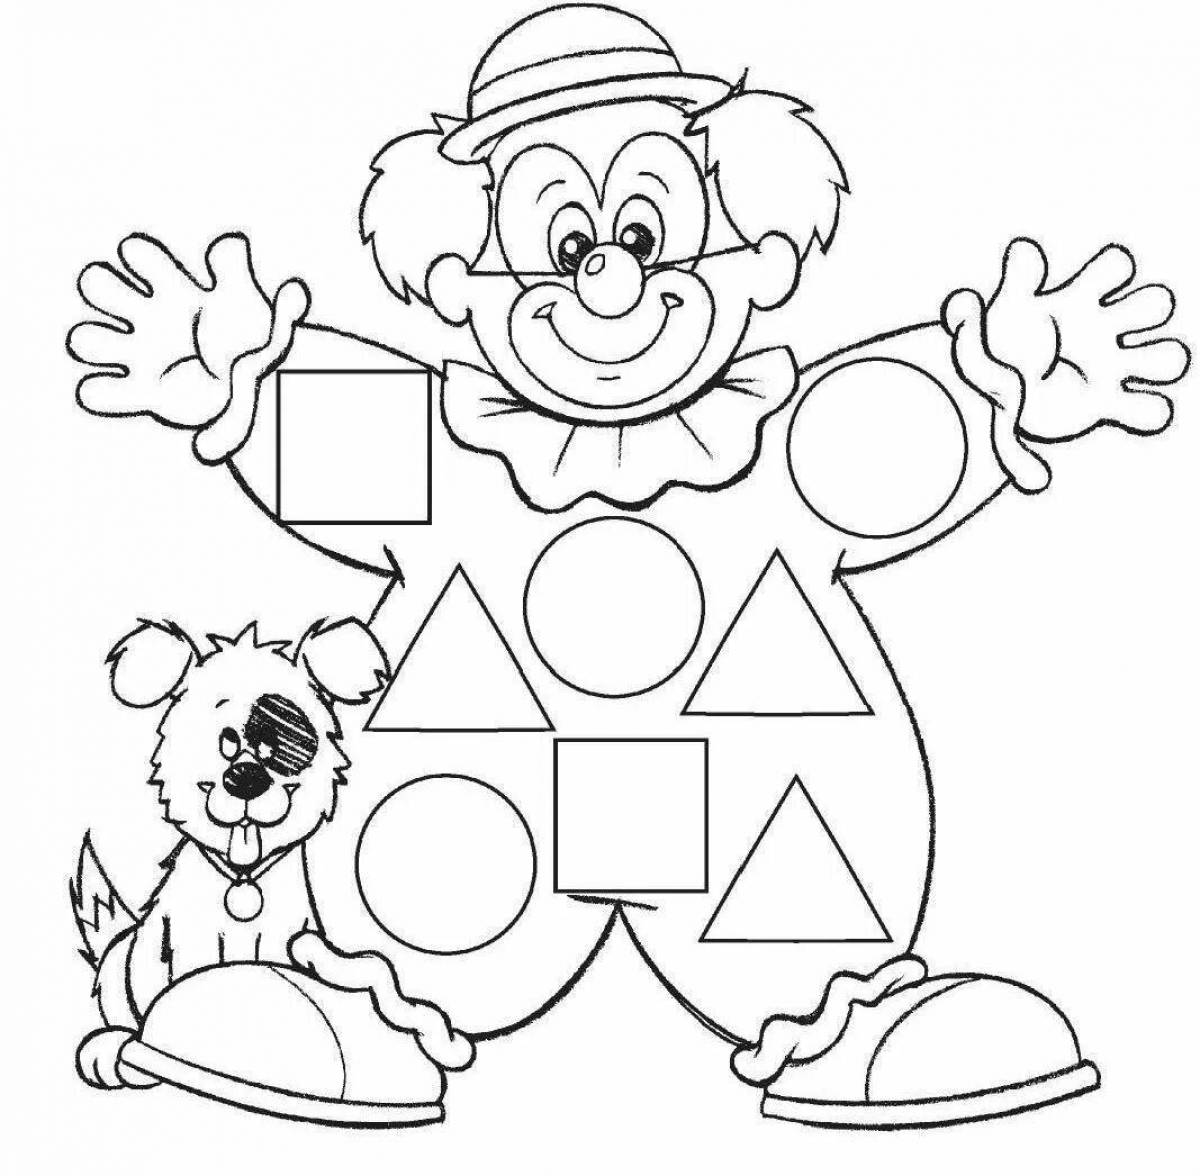 Забавный клоун-раскраска для дошкольников